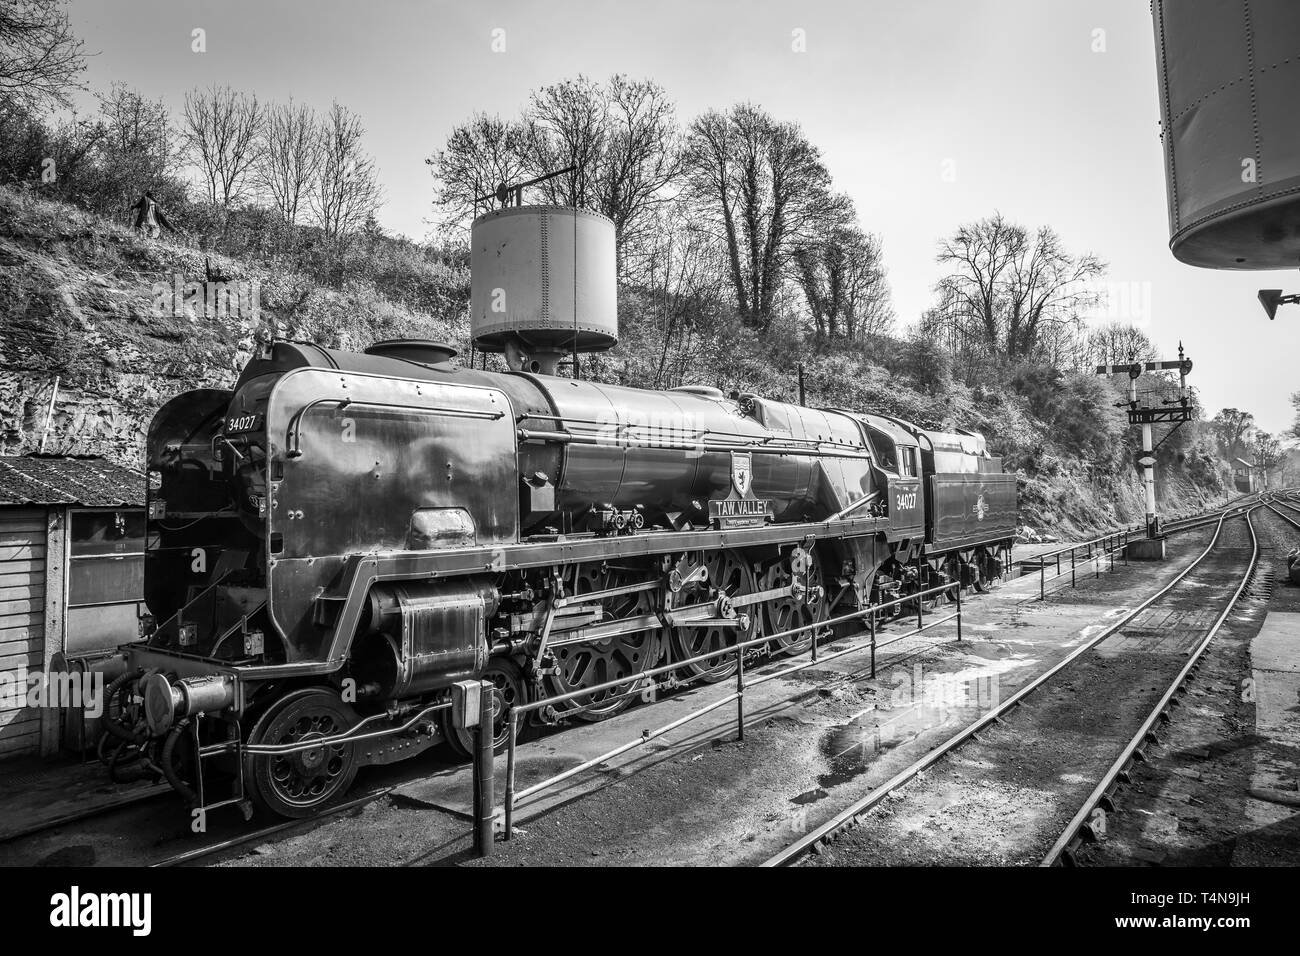 Vista laterale in bianco e nero della locomotiva a vapore vintage UK 34027 Taw Valley nei dintorni, Severn Valley Heritage stazione ferroviaria, Bewdley. Foto Stock